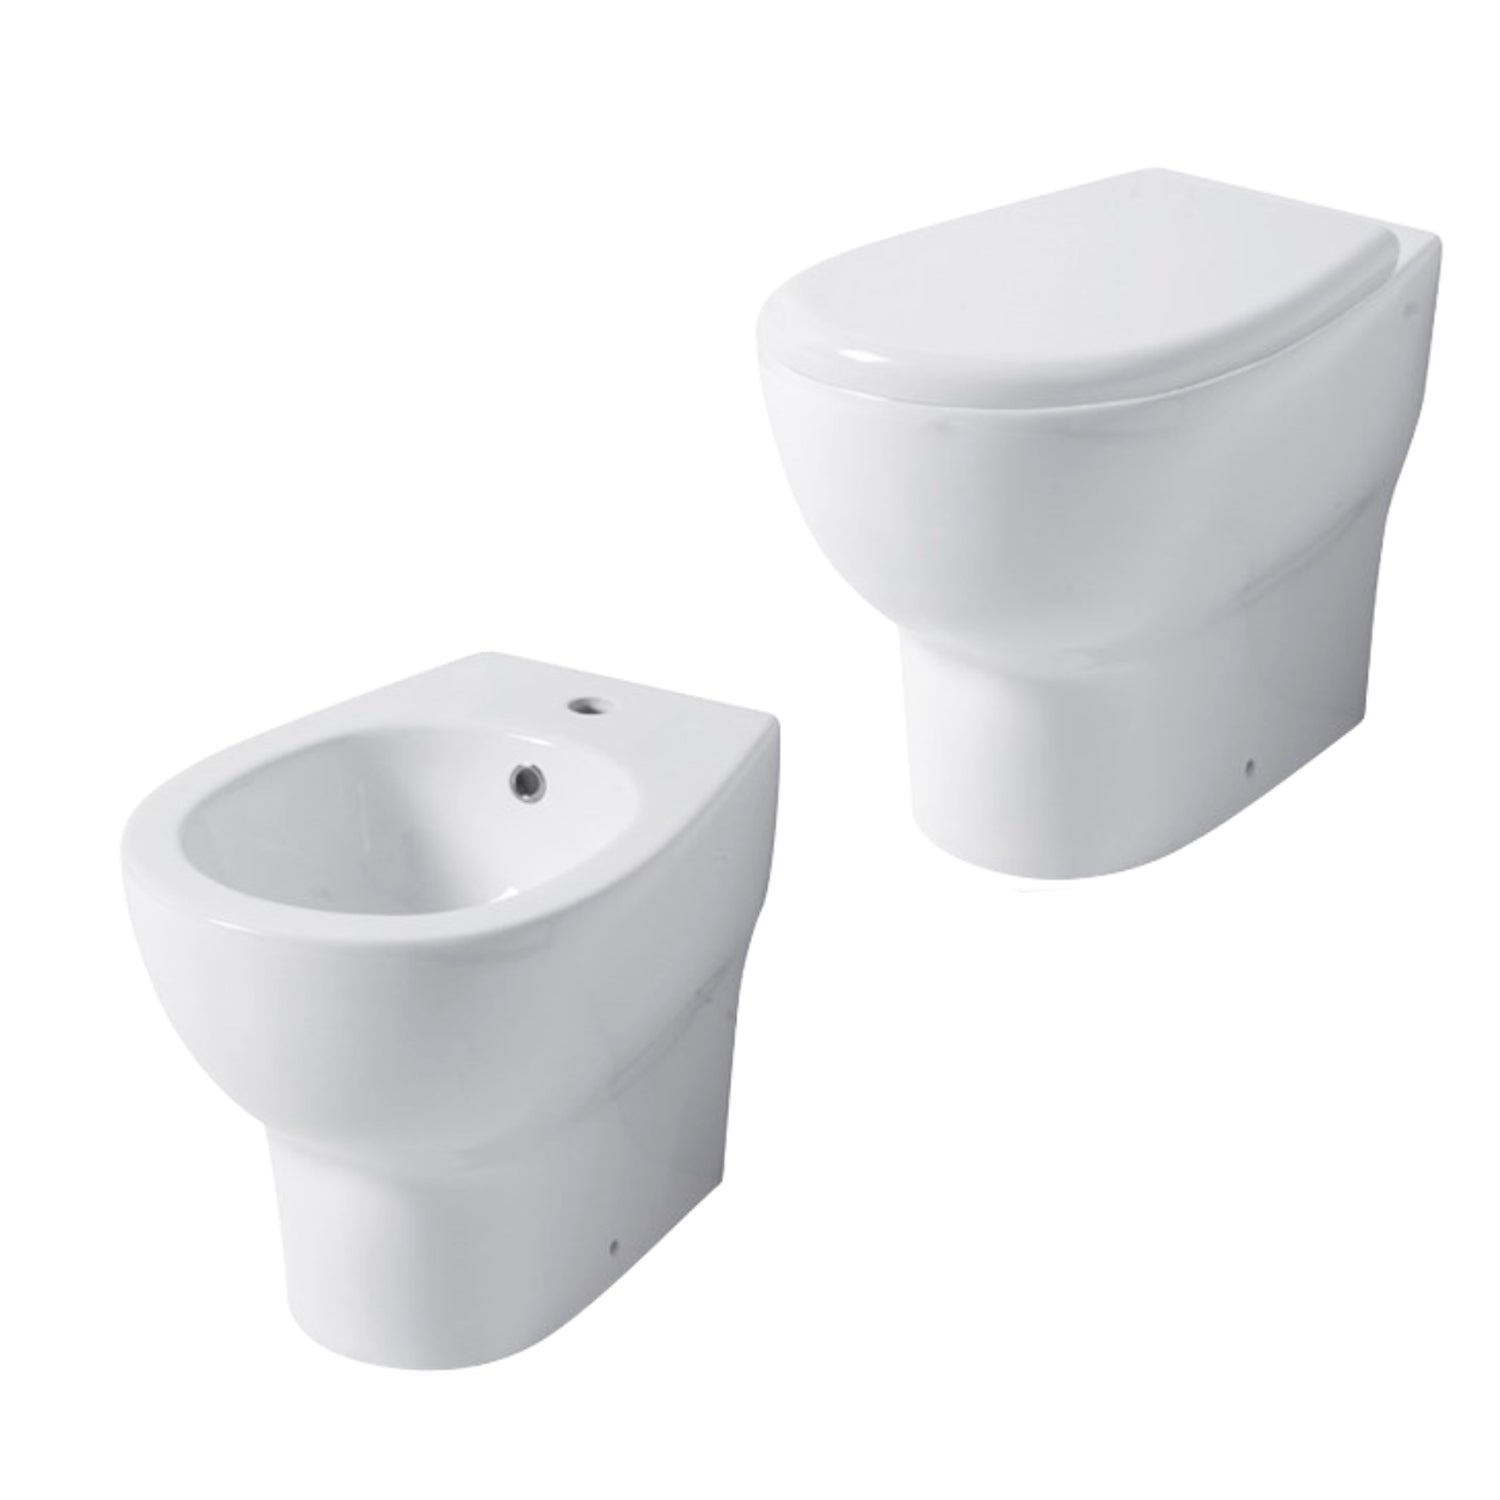 Santari filomuro serie Touch54 in ceramica bianca con coprivaso chiusura softclose- Disegno Ceramica